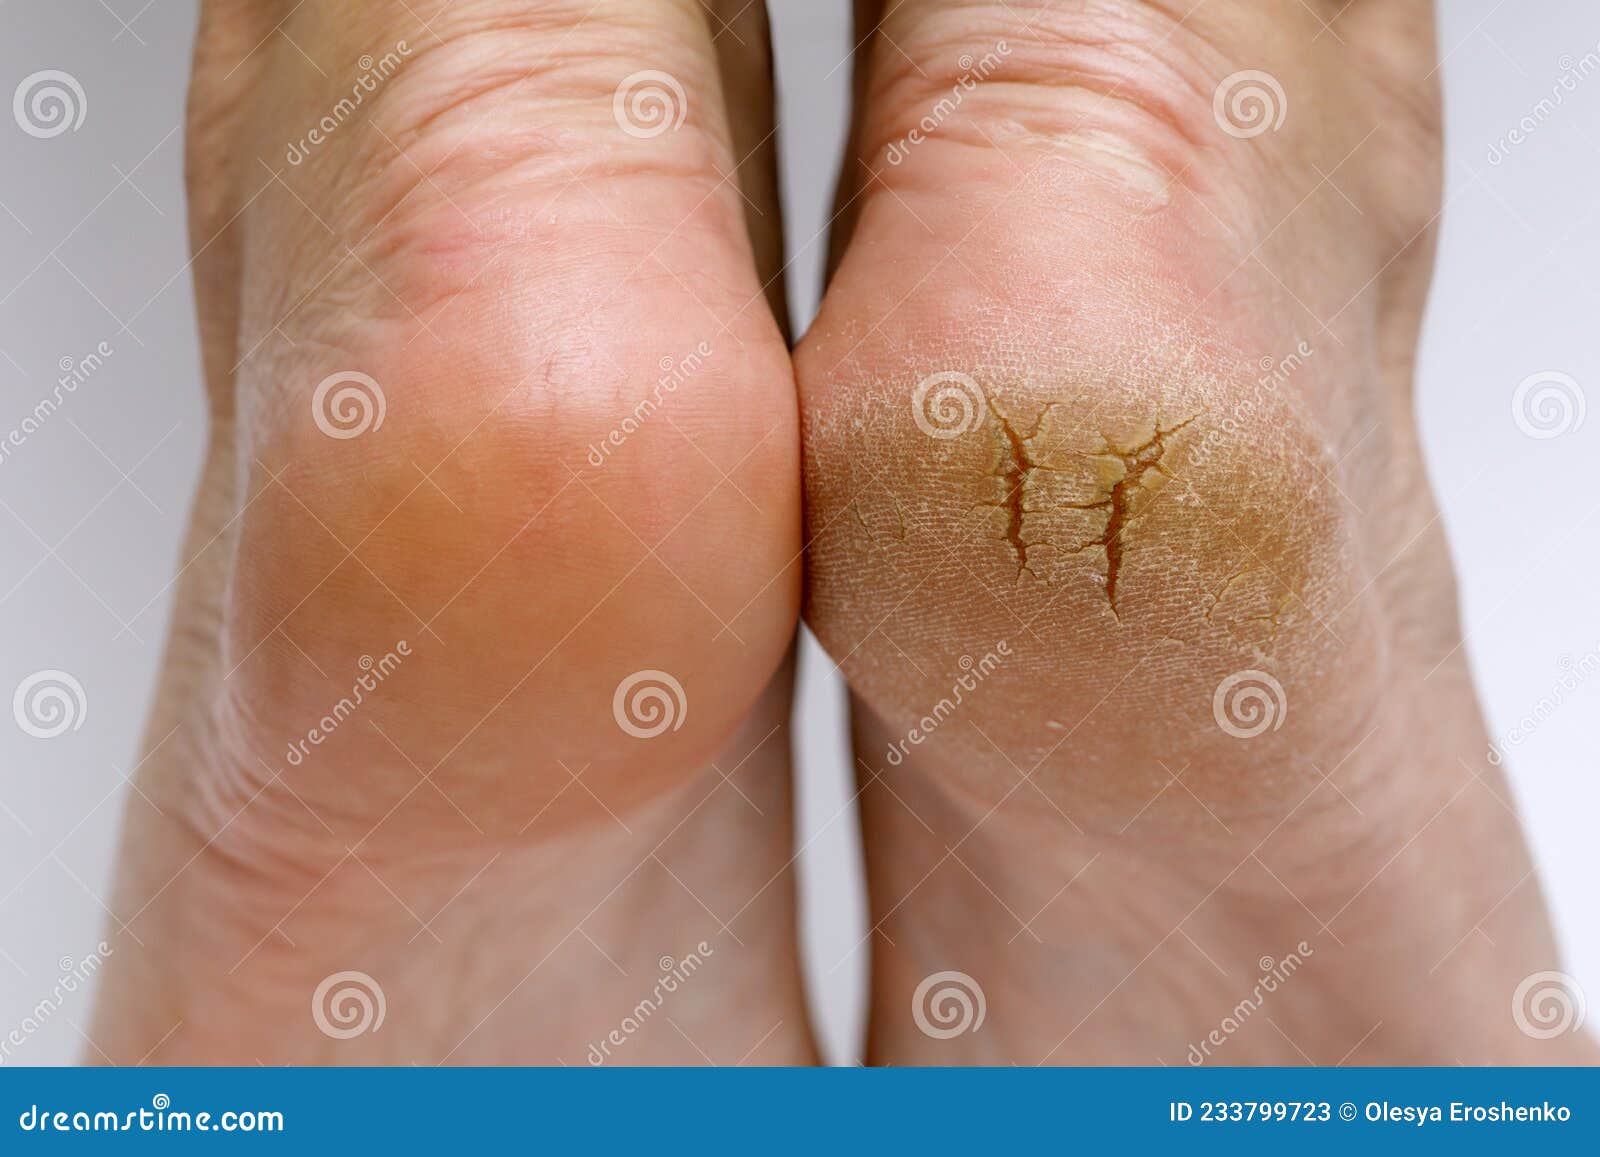 Dry Feet? Essential Tips for Treating Dry Skin on Feet | Vaseline® |  Unilever Vaseline®